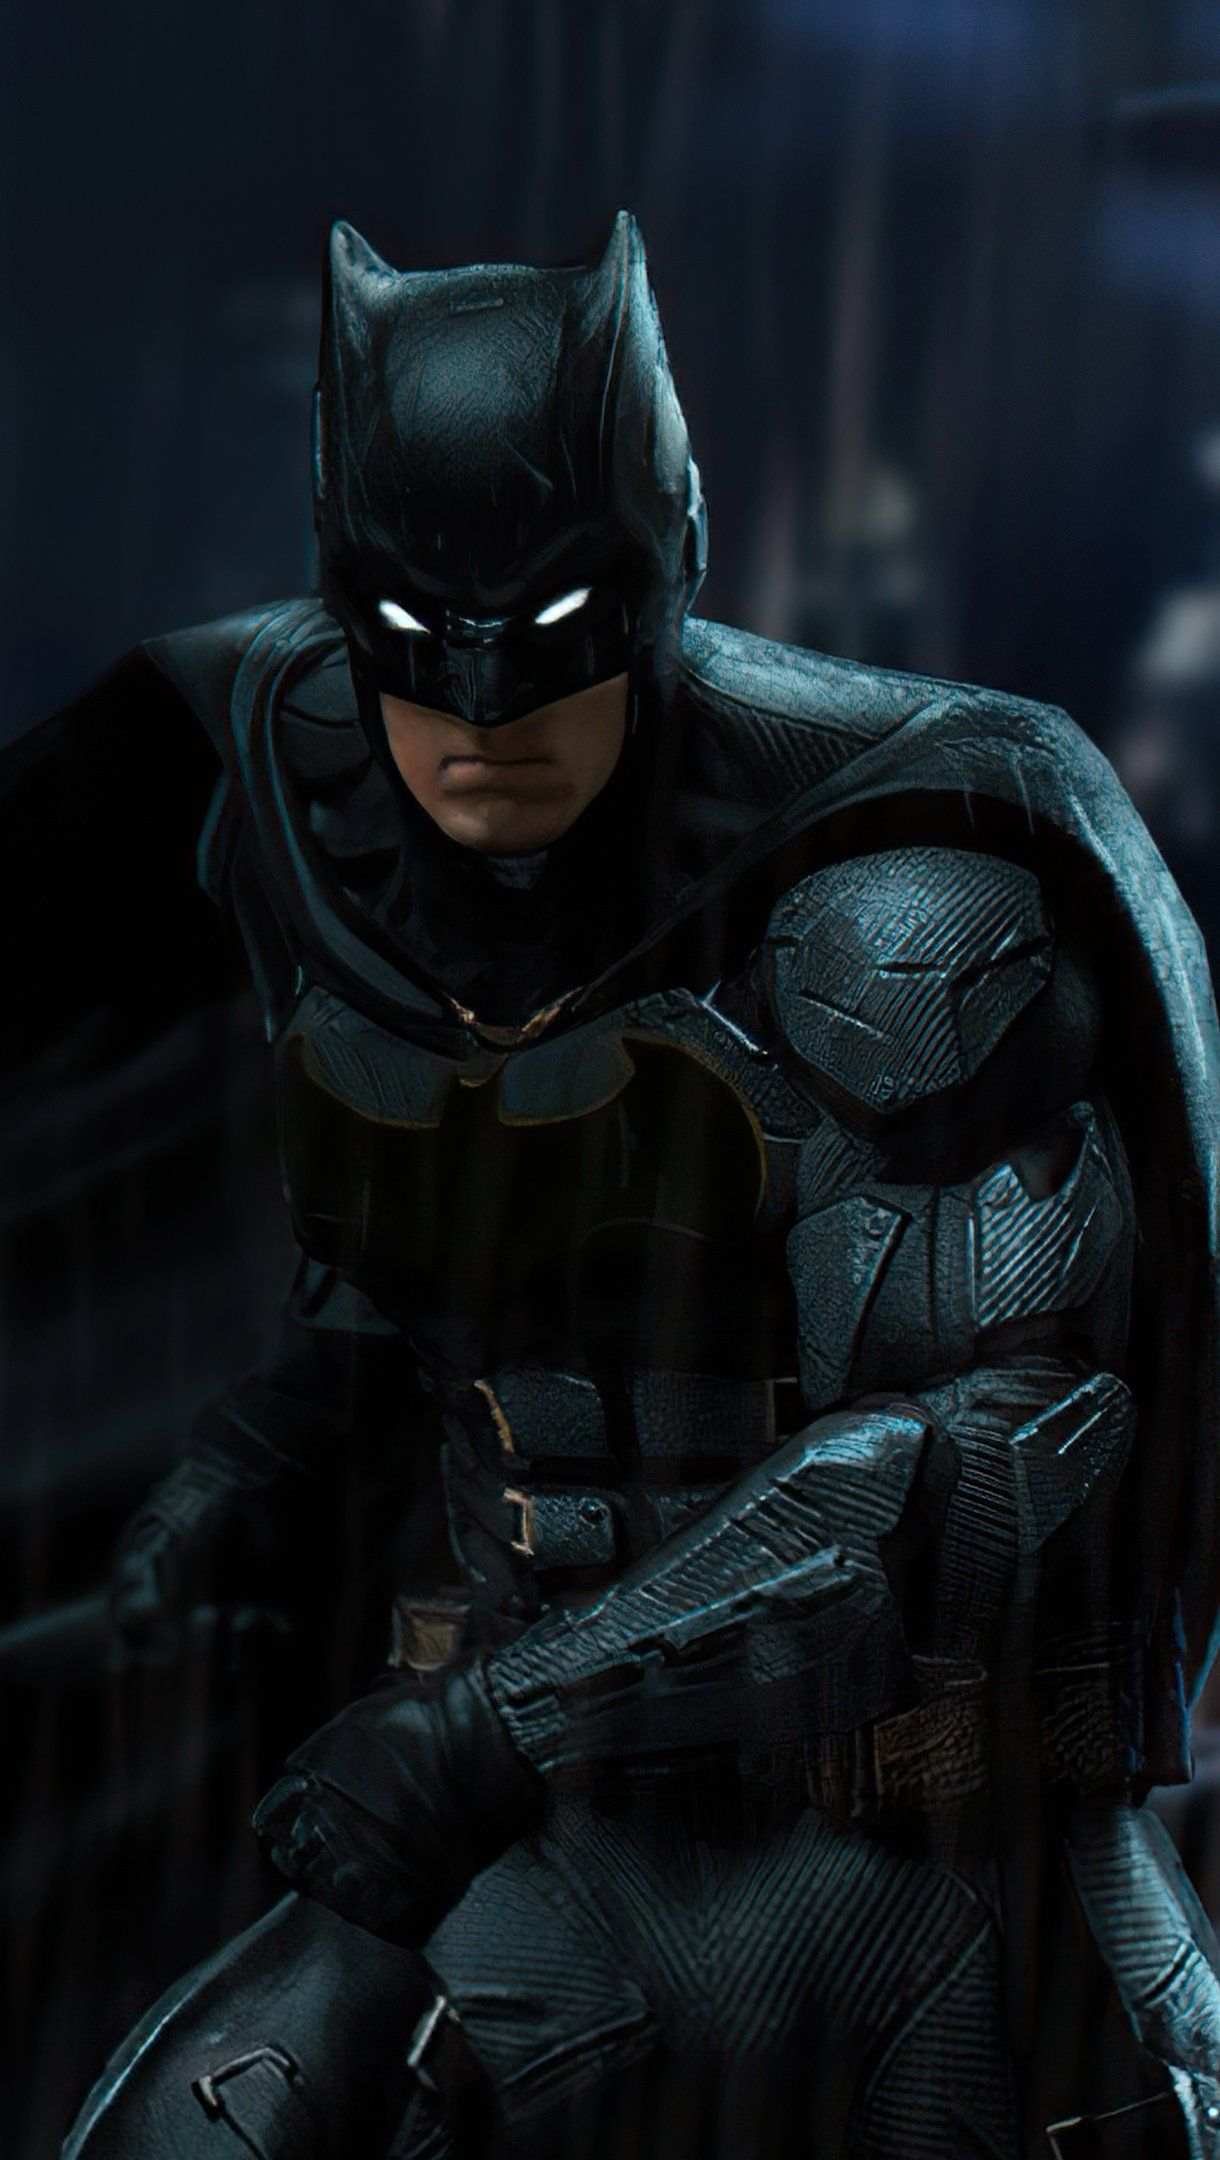 Ben Affleck as Batman Fanart Wallpaper 4k Ultra HD